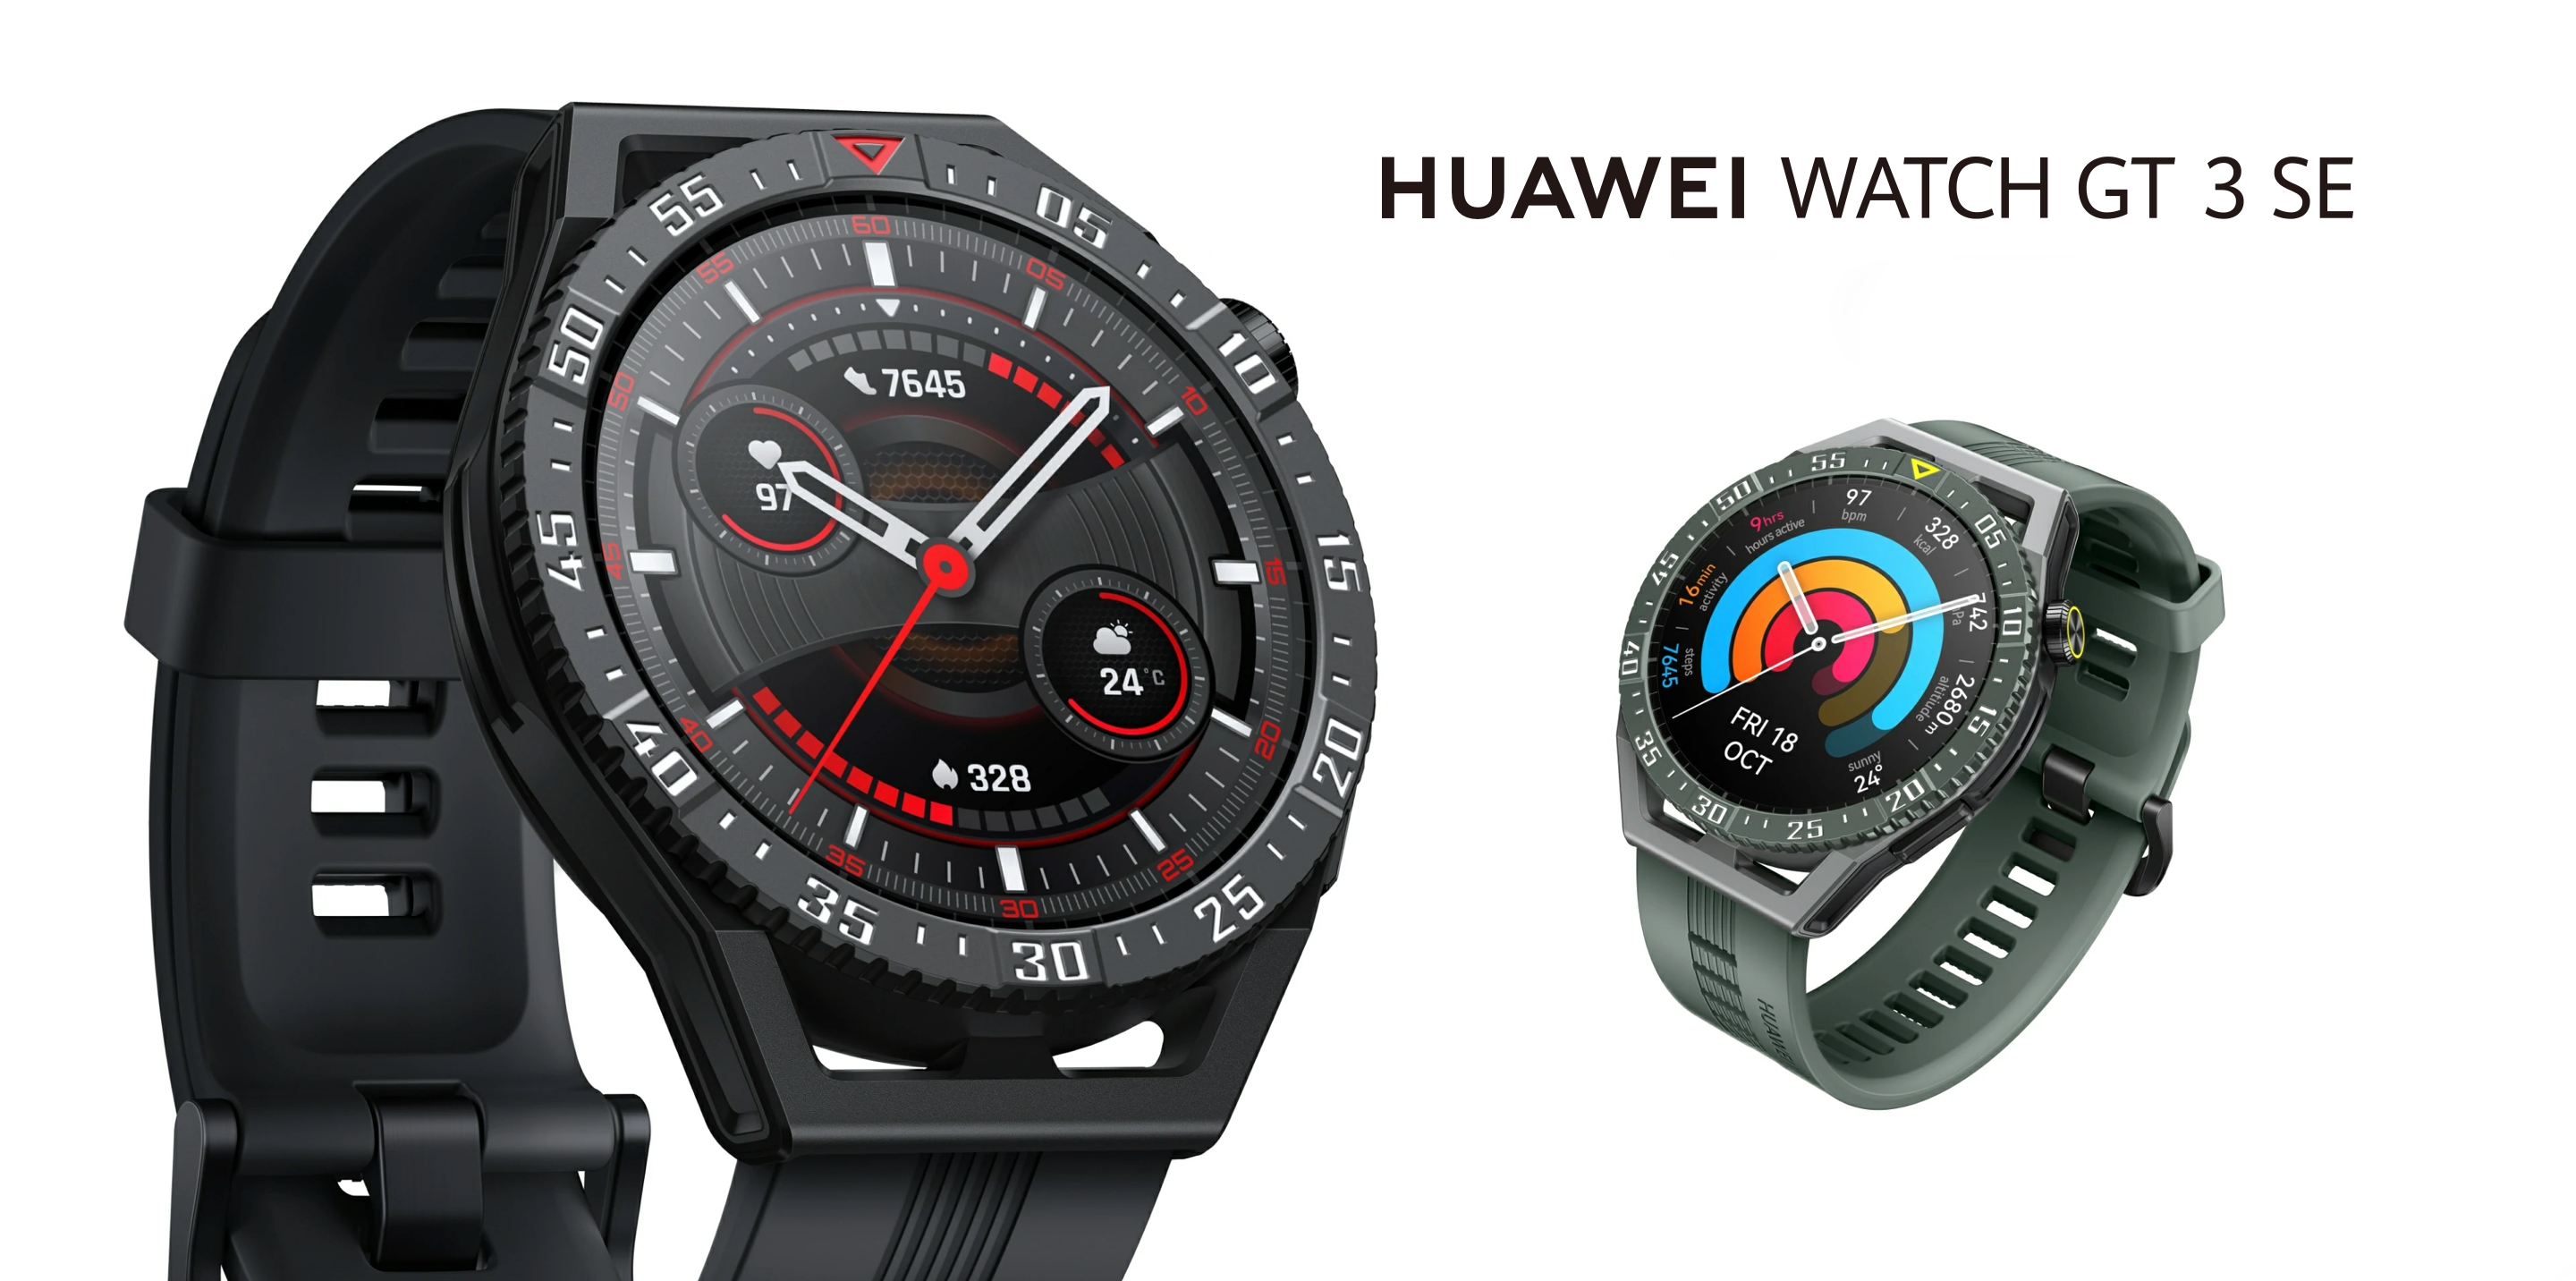 Huawei Watch GT 3 SE: smartwatch na rynek globalny z ekranem AMOLED, ochroną przed wodą, czujnikiem SpO2 i czasem pracy na baterii do 14 dni